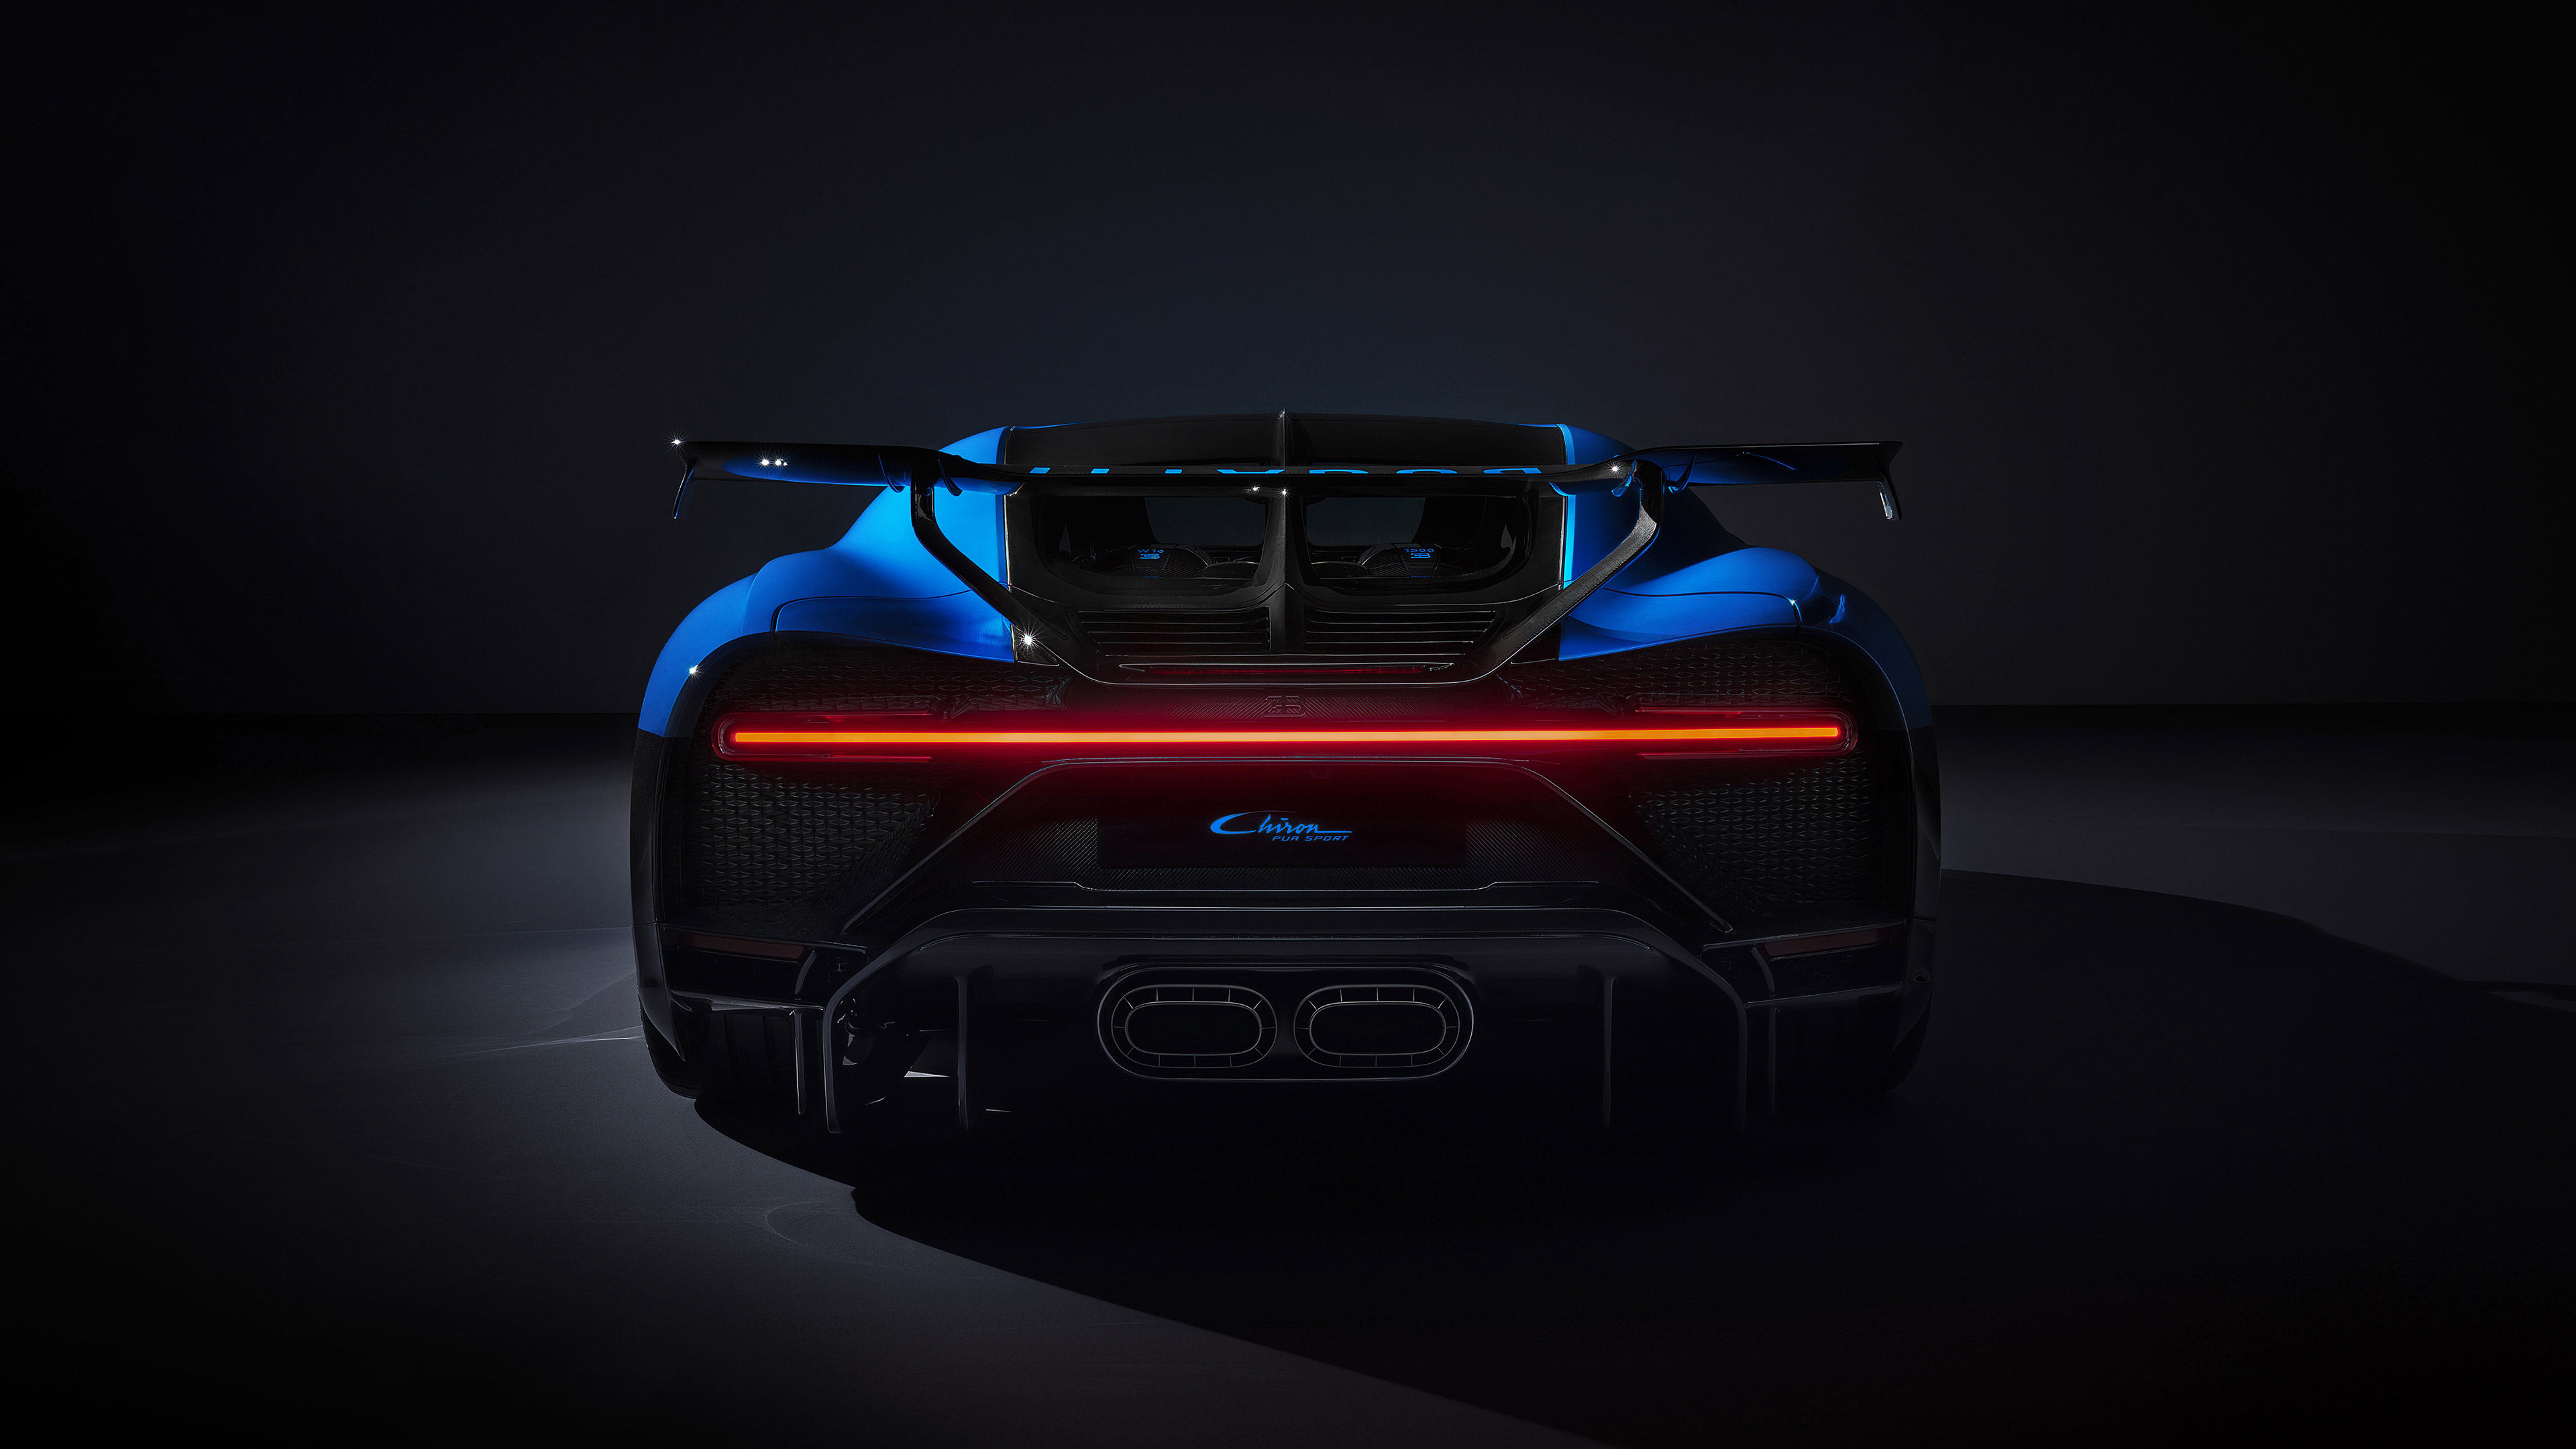  2021 Bugatti Chiron Pur Sport Wallpaper.